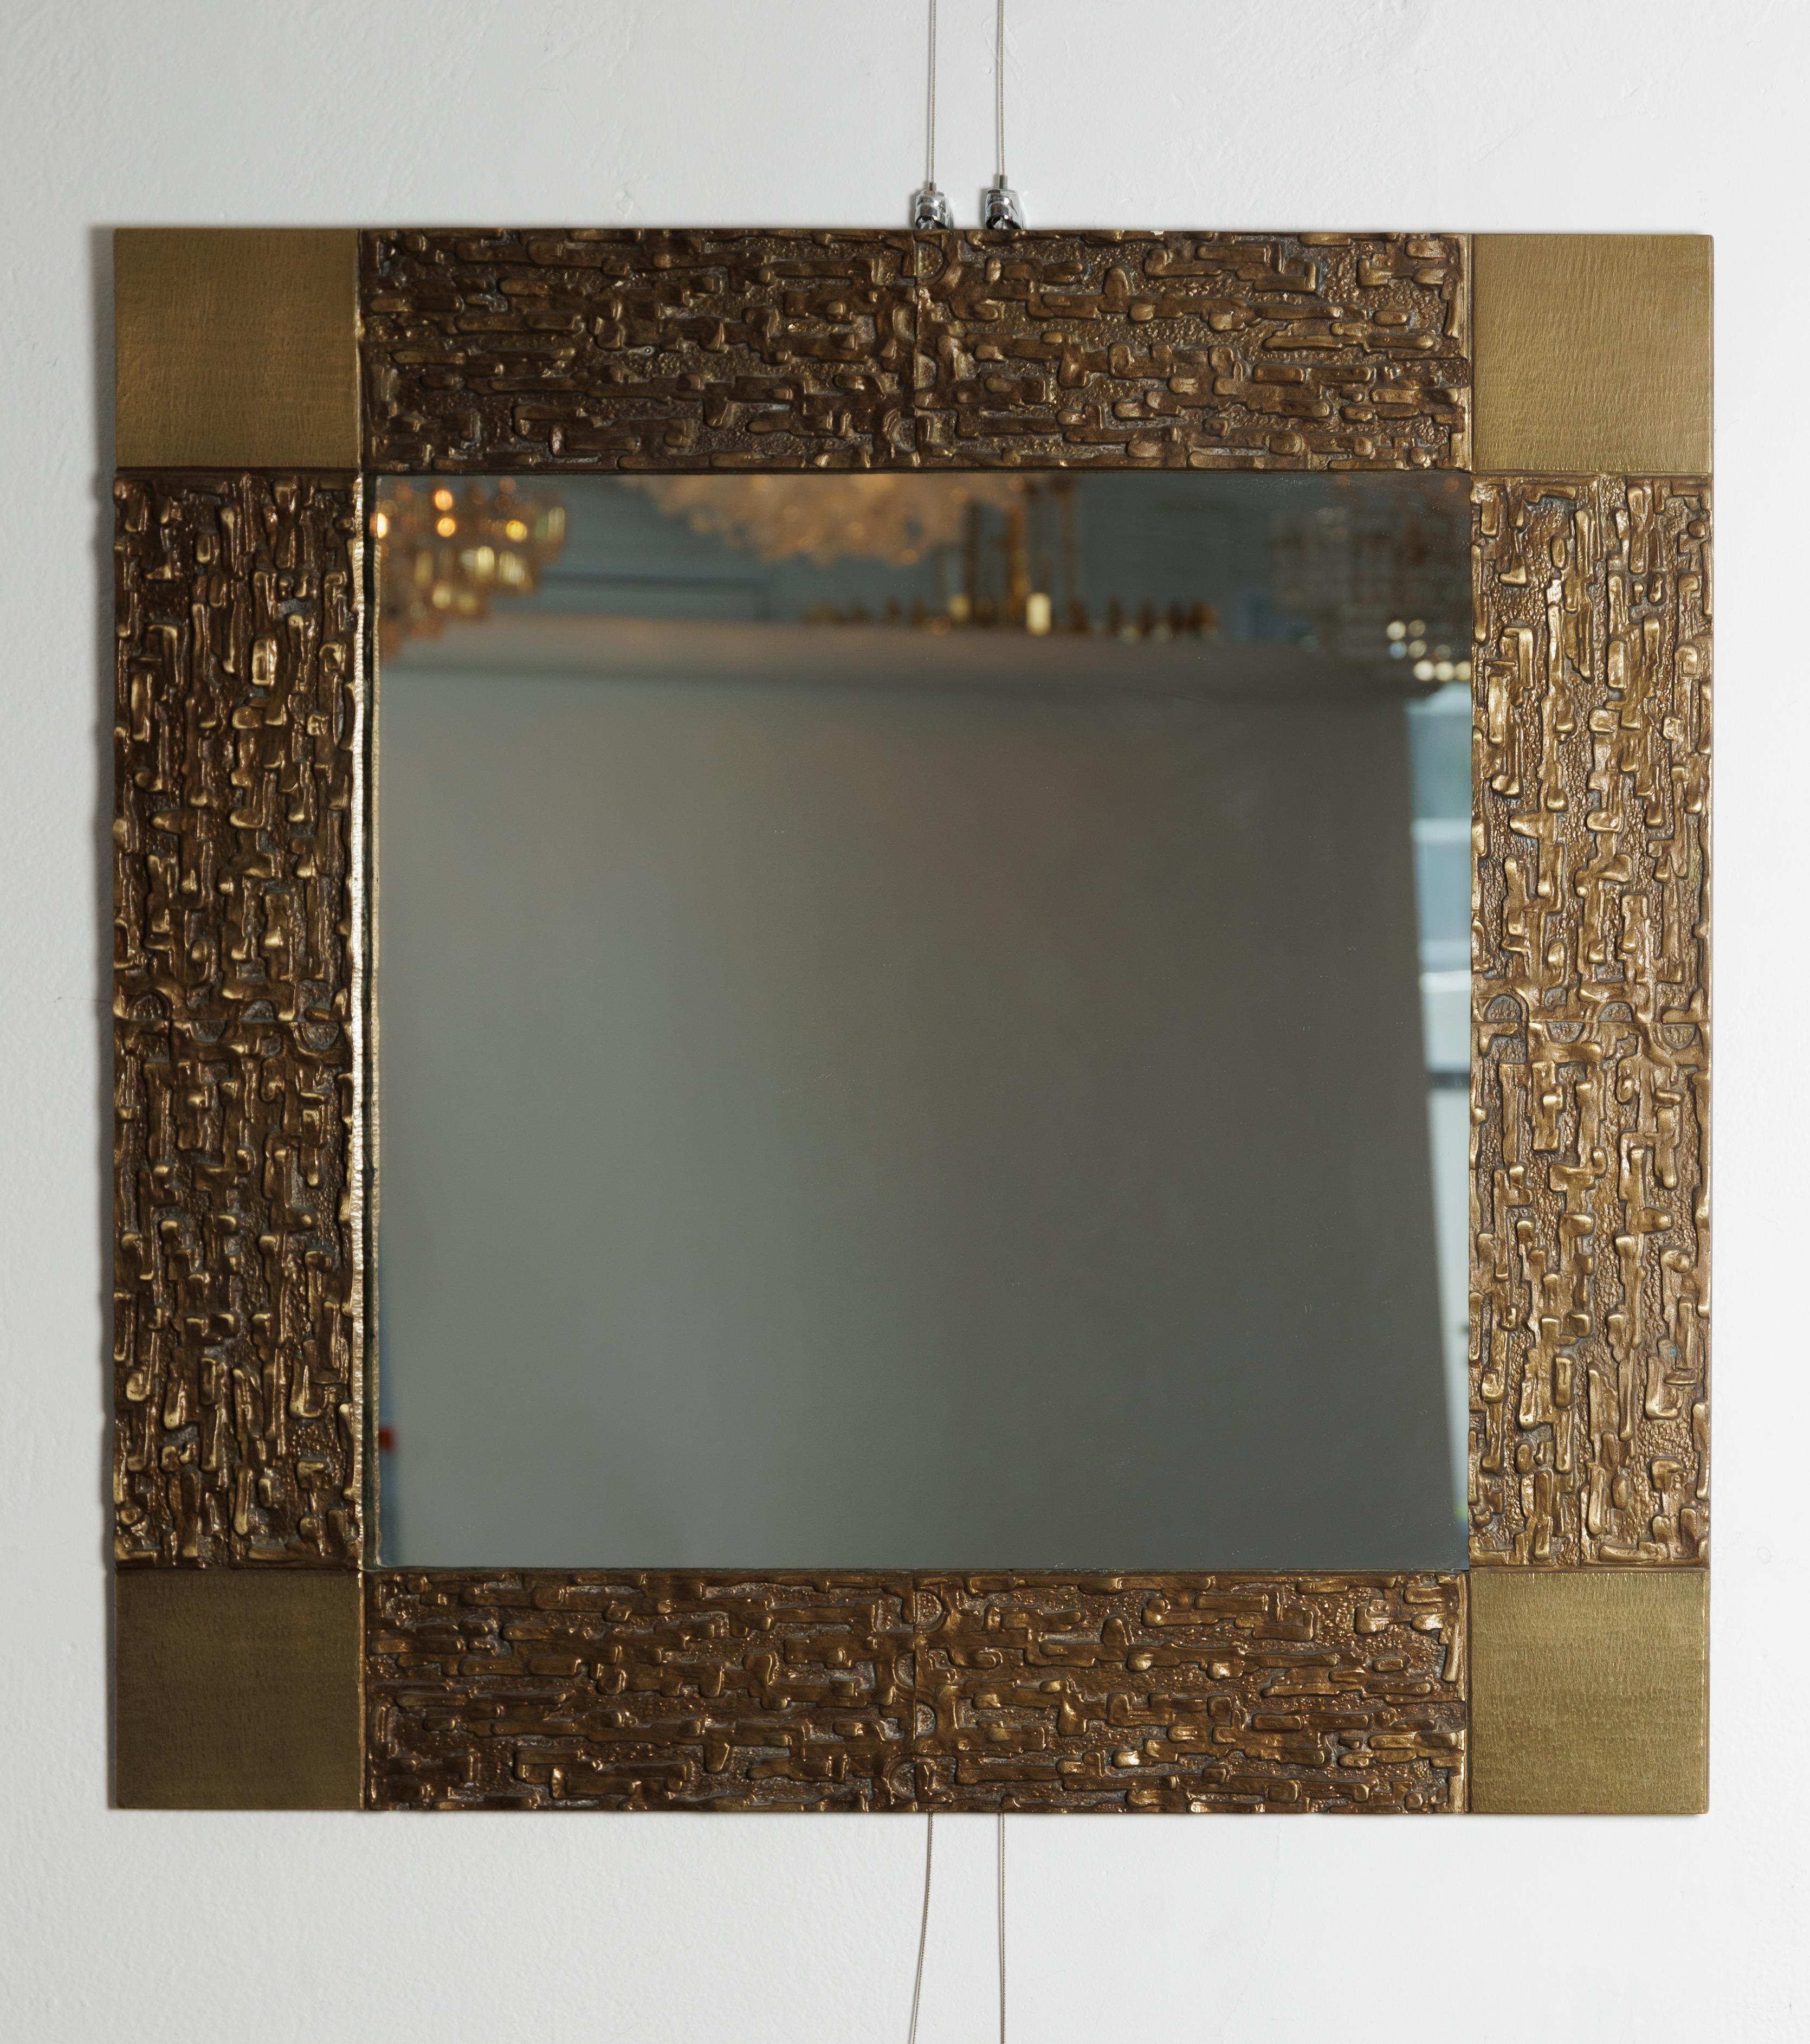 Quadratischer Spiegel mit Bronzeeinfassung und skulpturalen Details.
Wird Frigerio zugeschrieben.